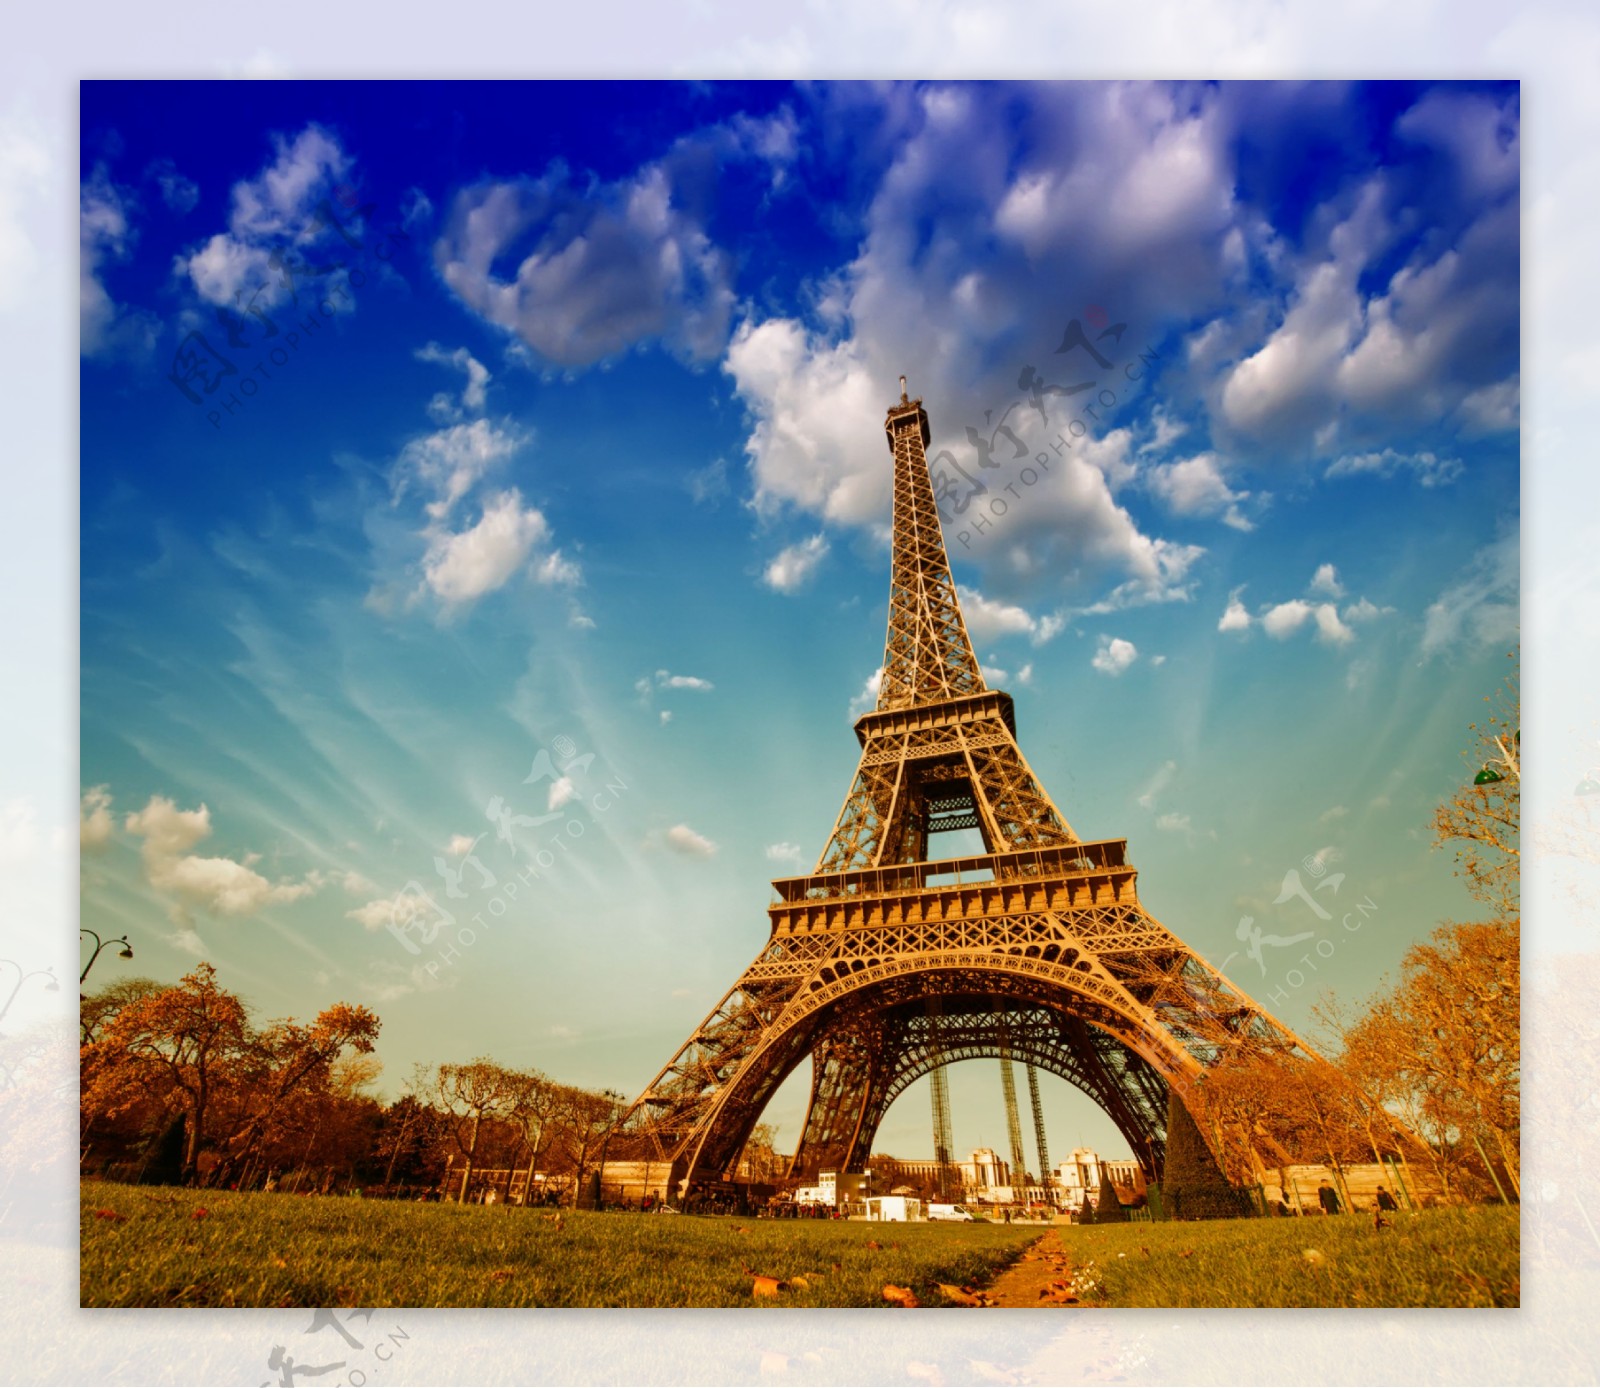 晚上的艾菲尔铁塔-法国风景壁纸 - 2560x1600 壁纸下载 -10wallpaper.com